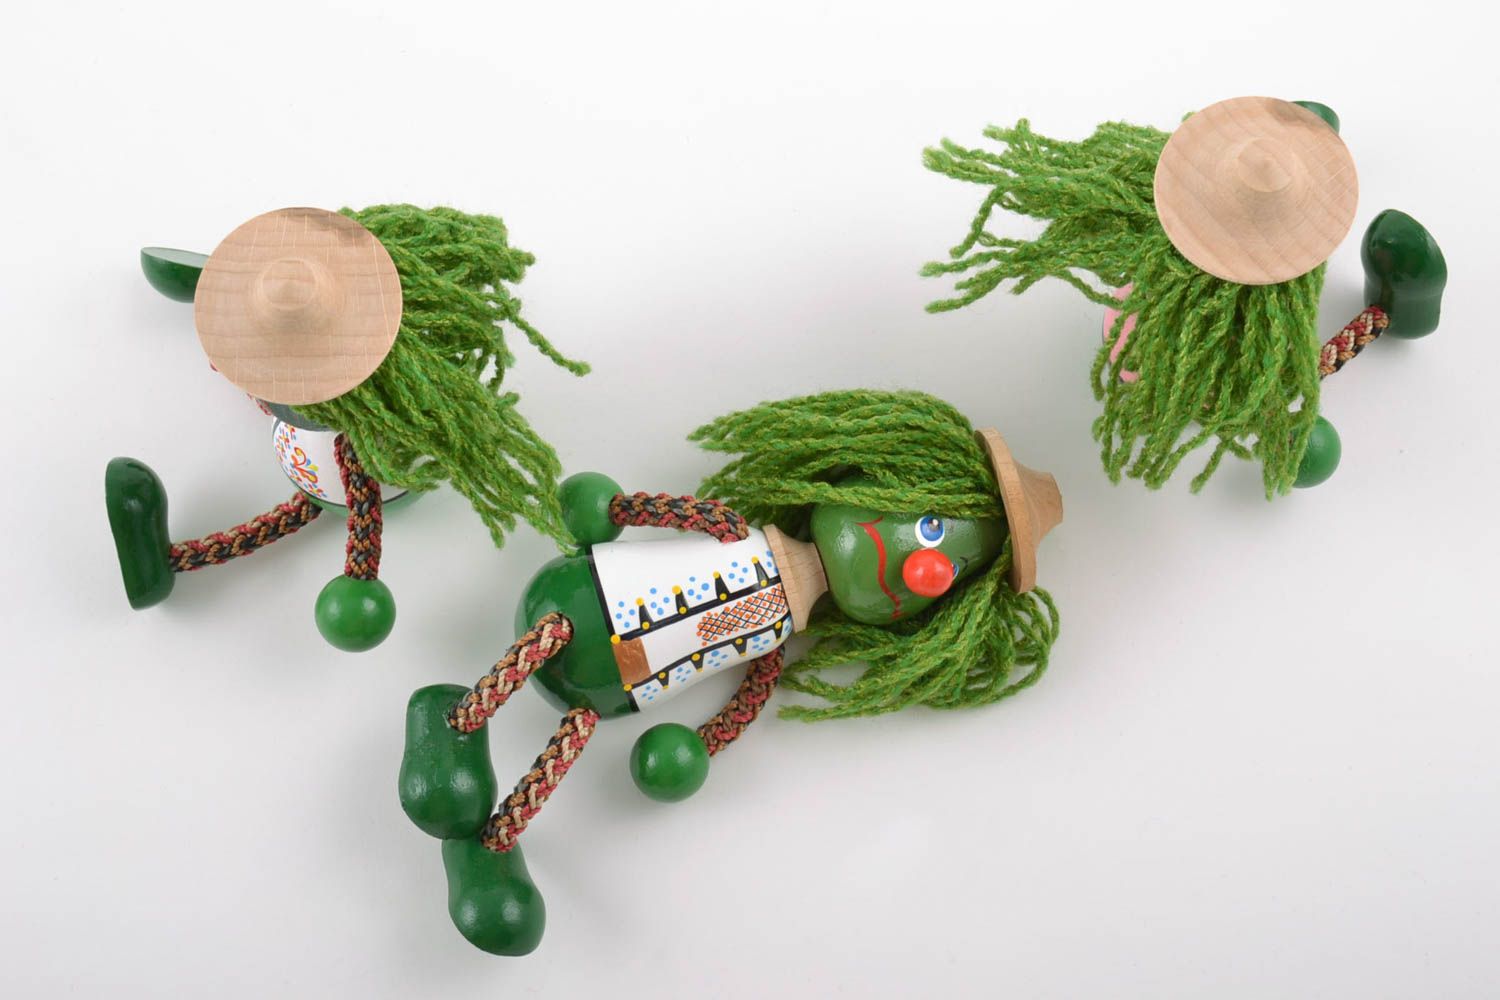 Игрушки из дерева водяные три штуки расписанные красками маленькие ручной работы фото 3